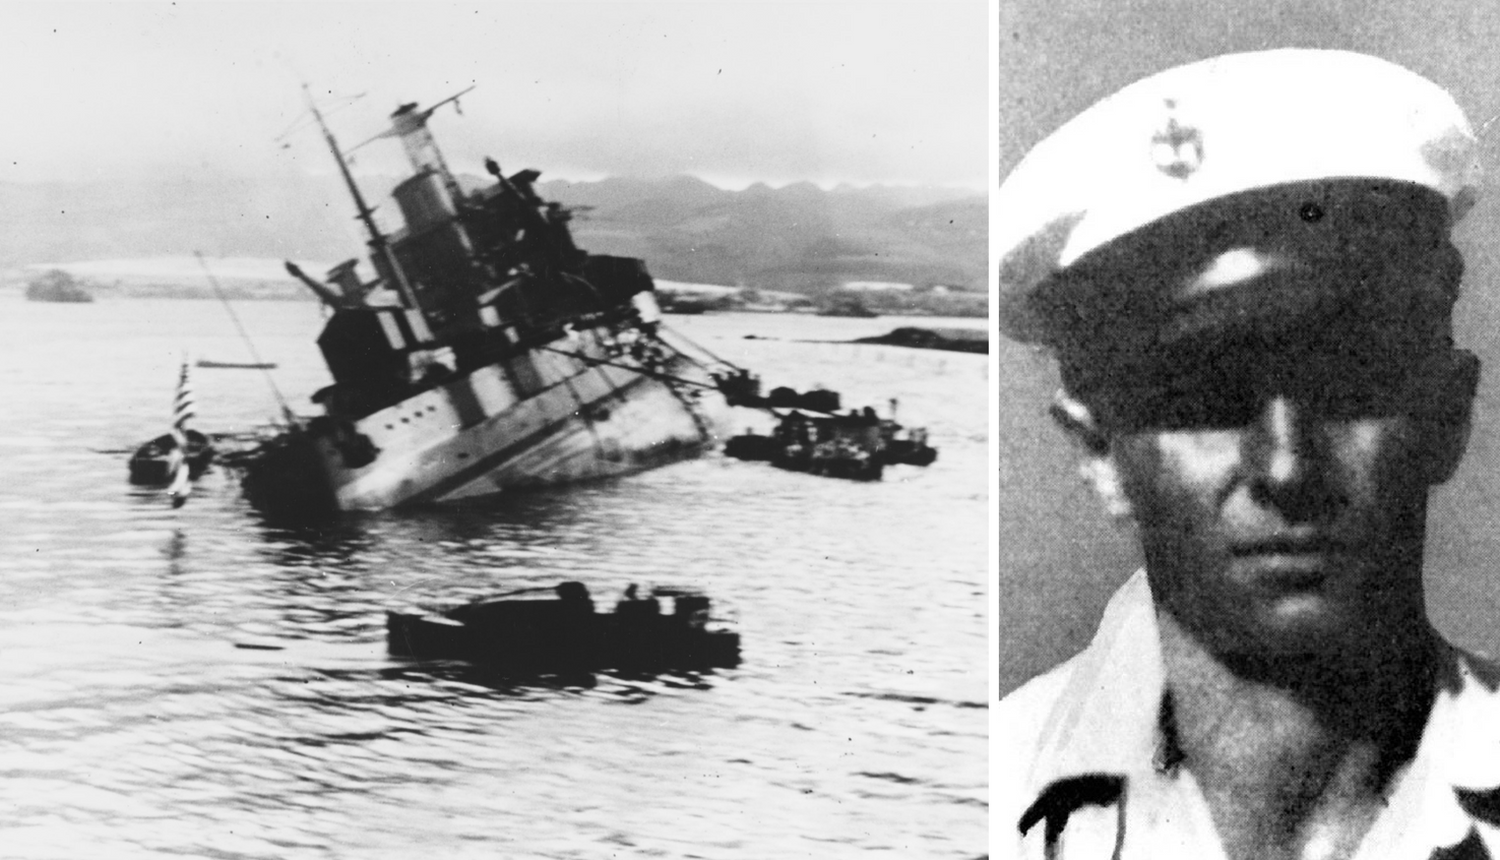 Heroj Pearl Harbora: Hrvat koji je žrtvovao sebe da spasi druge